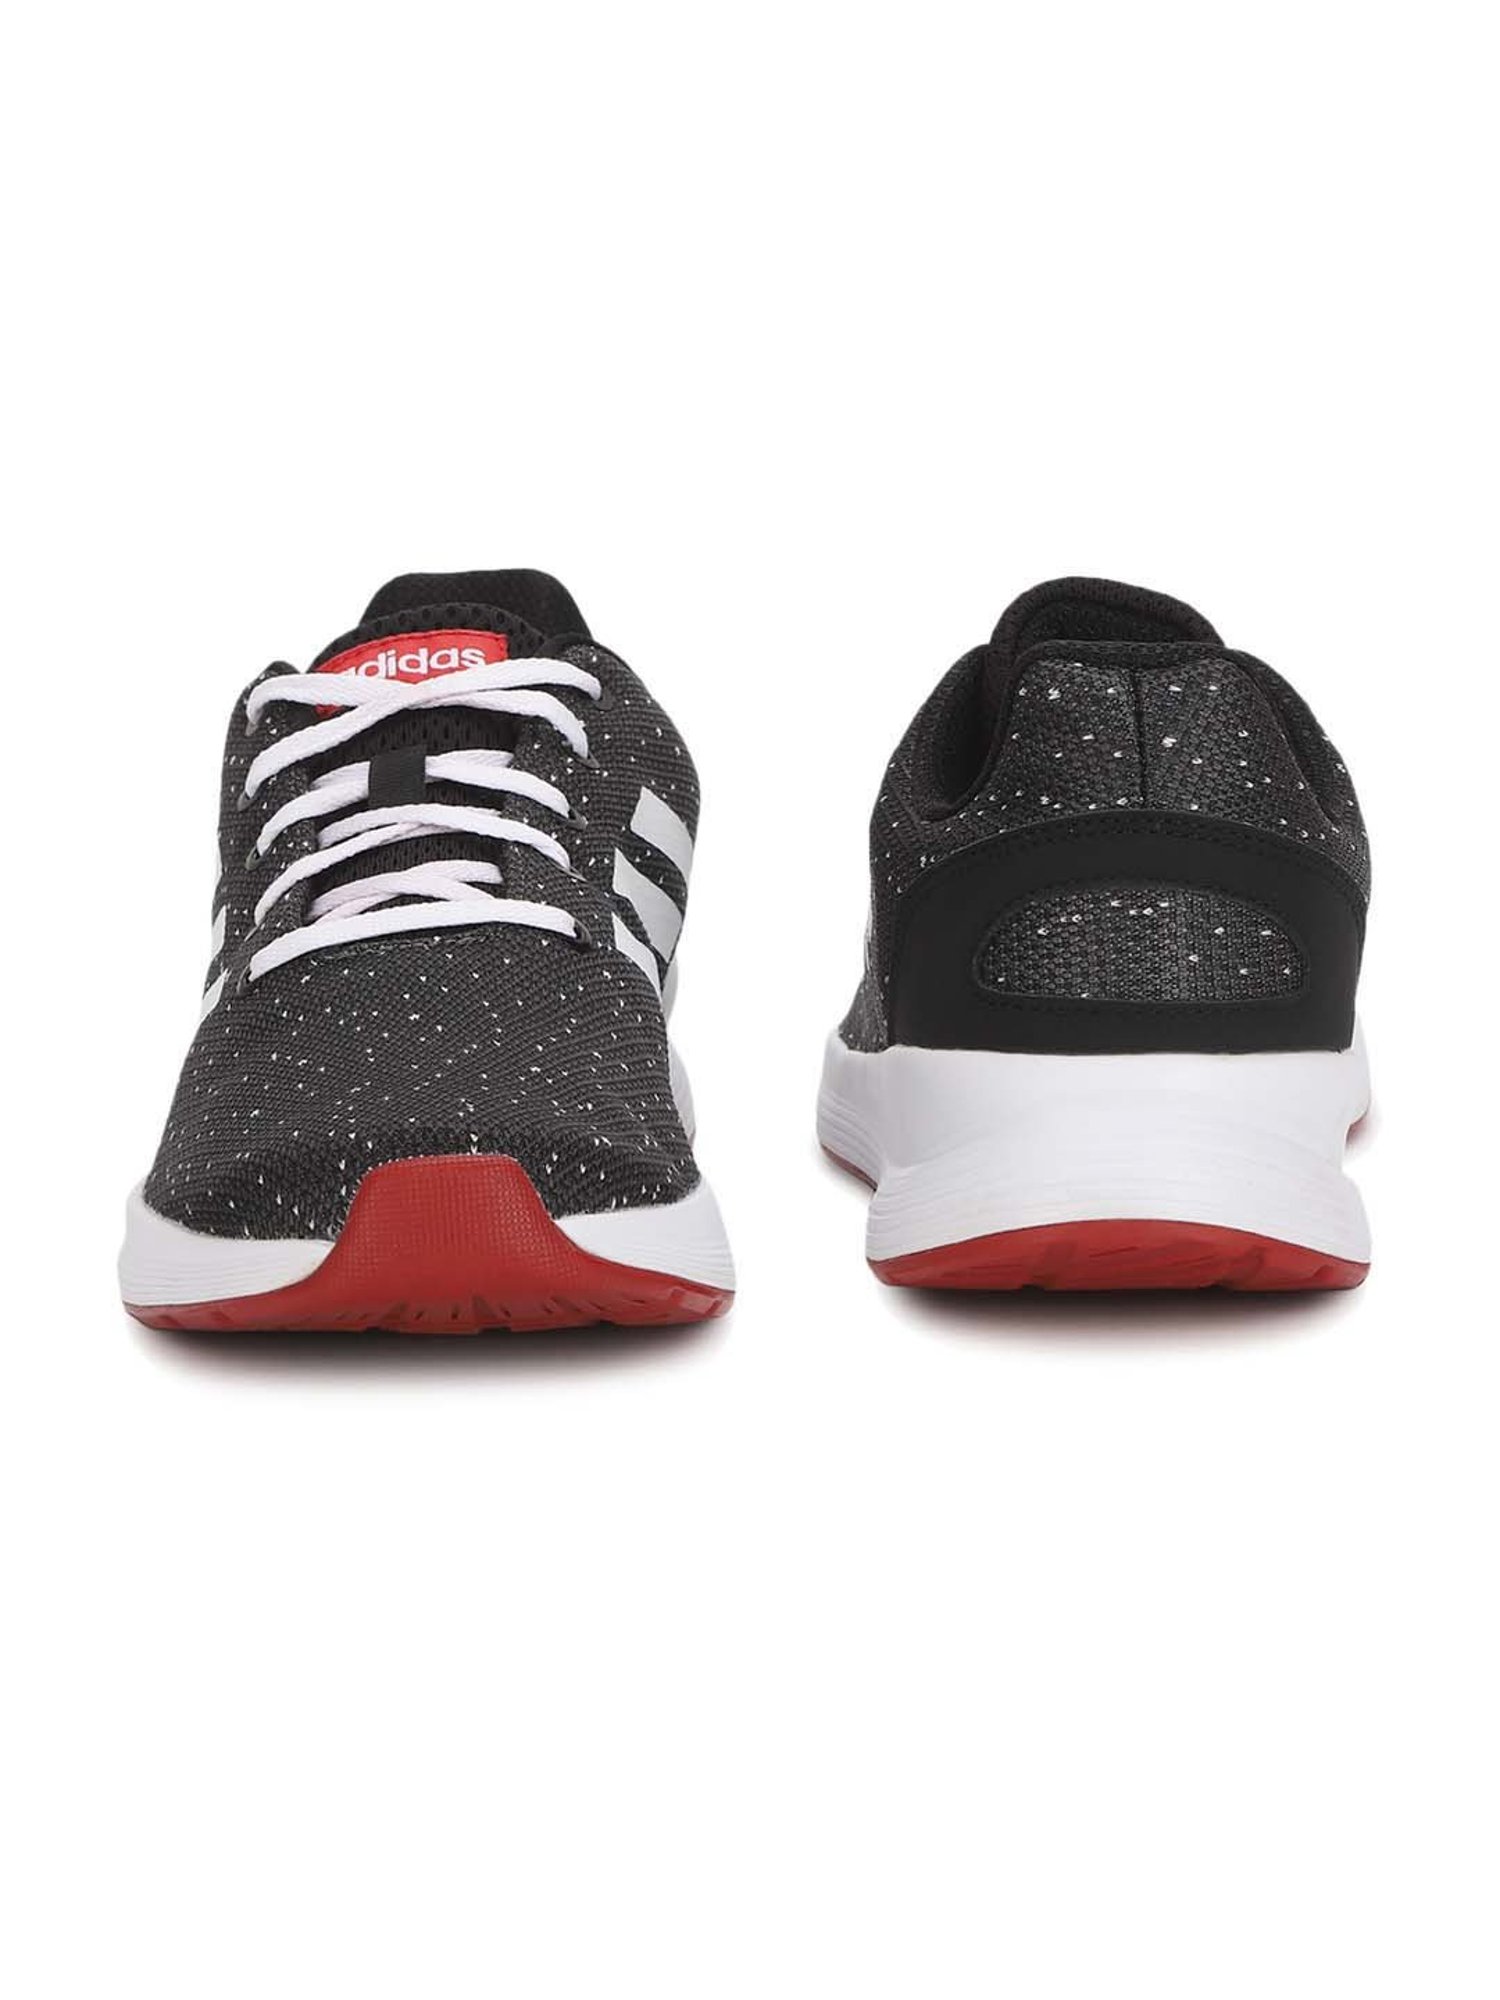 Salomon Men's XA Pro 3D v9 Trail Black Running Shoes